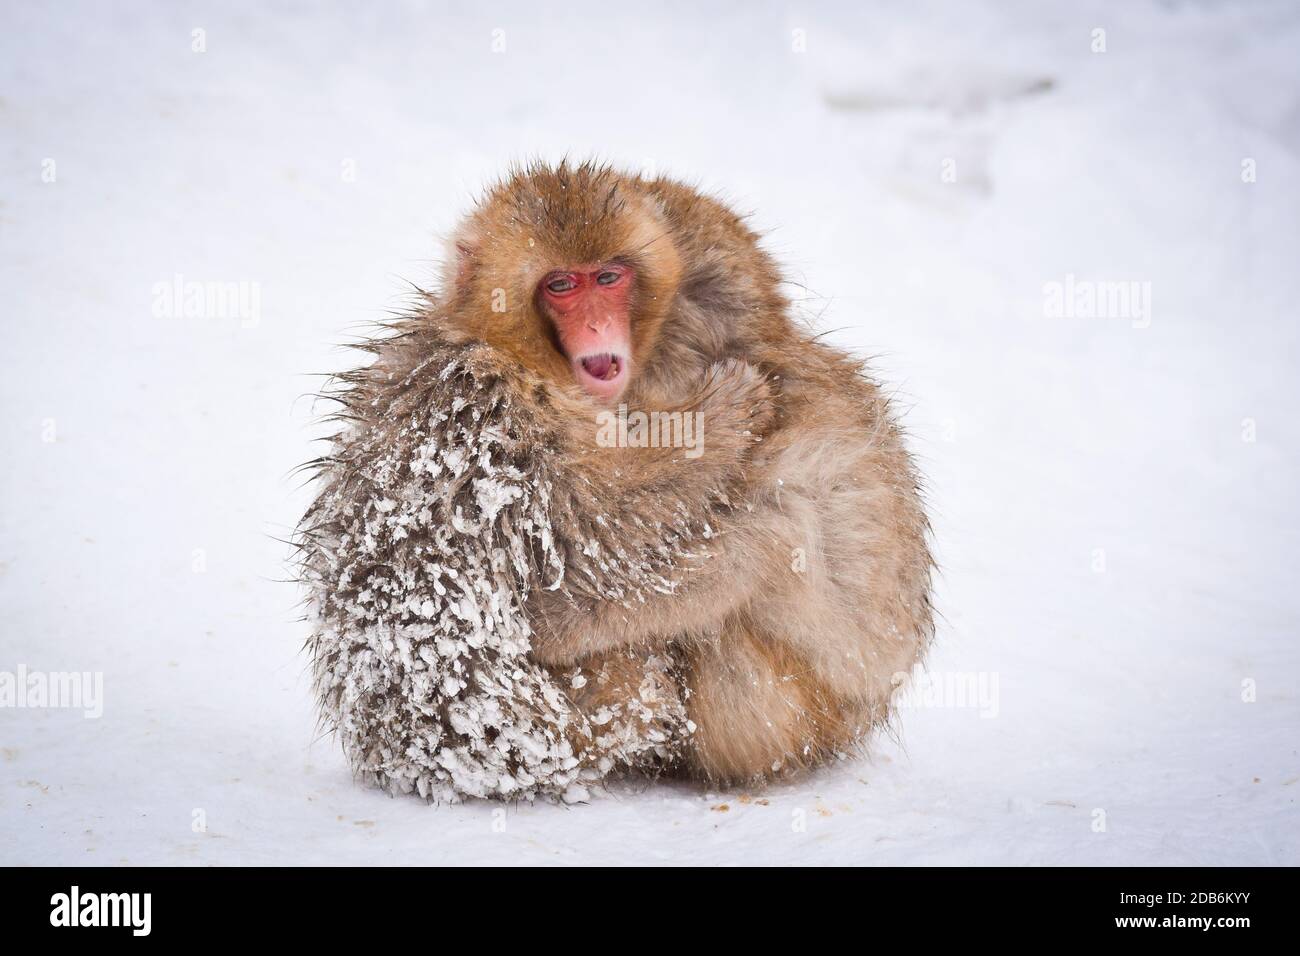 Zwei braune niedliche Baby-Schnee-Affen umarmen und schützen sich gegenseitig vor dem kalten Schnee mit Eis in ihrem Fell im Winter. Wilde Tiere, die Liebe zeigen Stockfoto